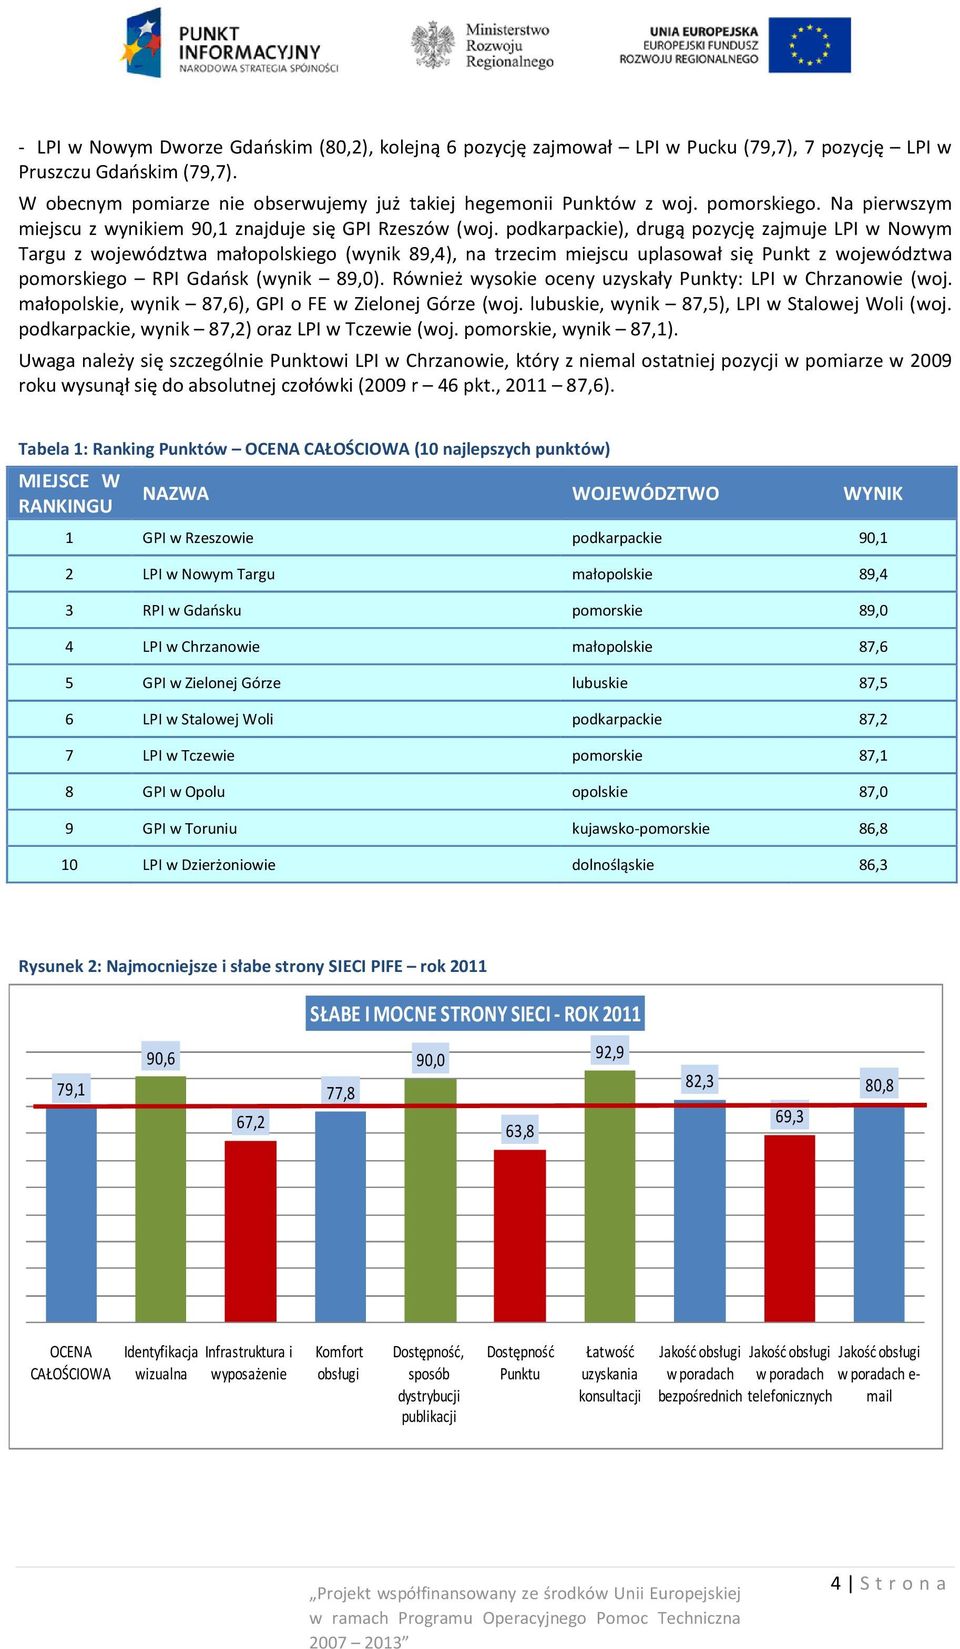 podkarpackie), drugą pozycję zajmuje LPI w Nowym Targu z województwa małopolskiego (wynik 89,4), na trzecim miejscu uplasował się Punkt z województwa pomorskiego RPI Gdańsk (wynik 89,0).